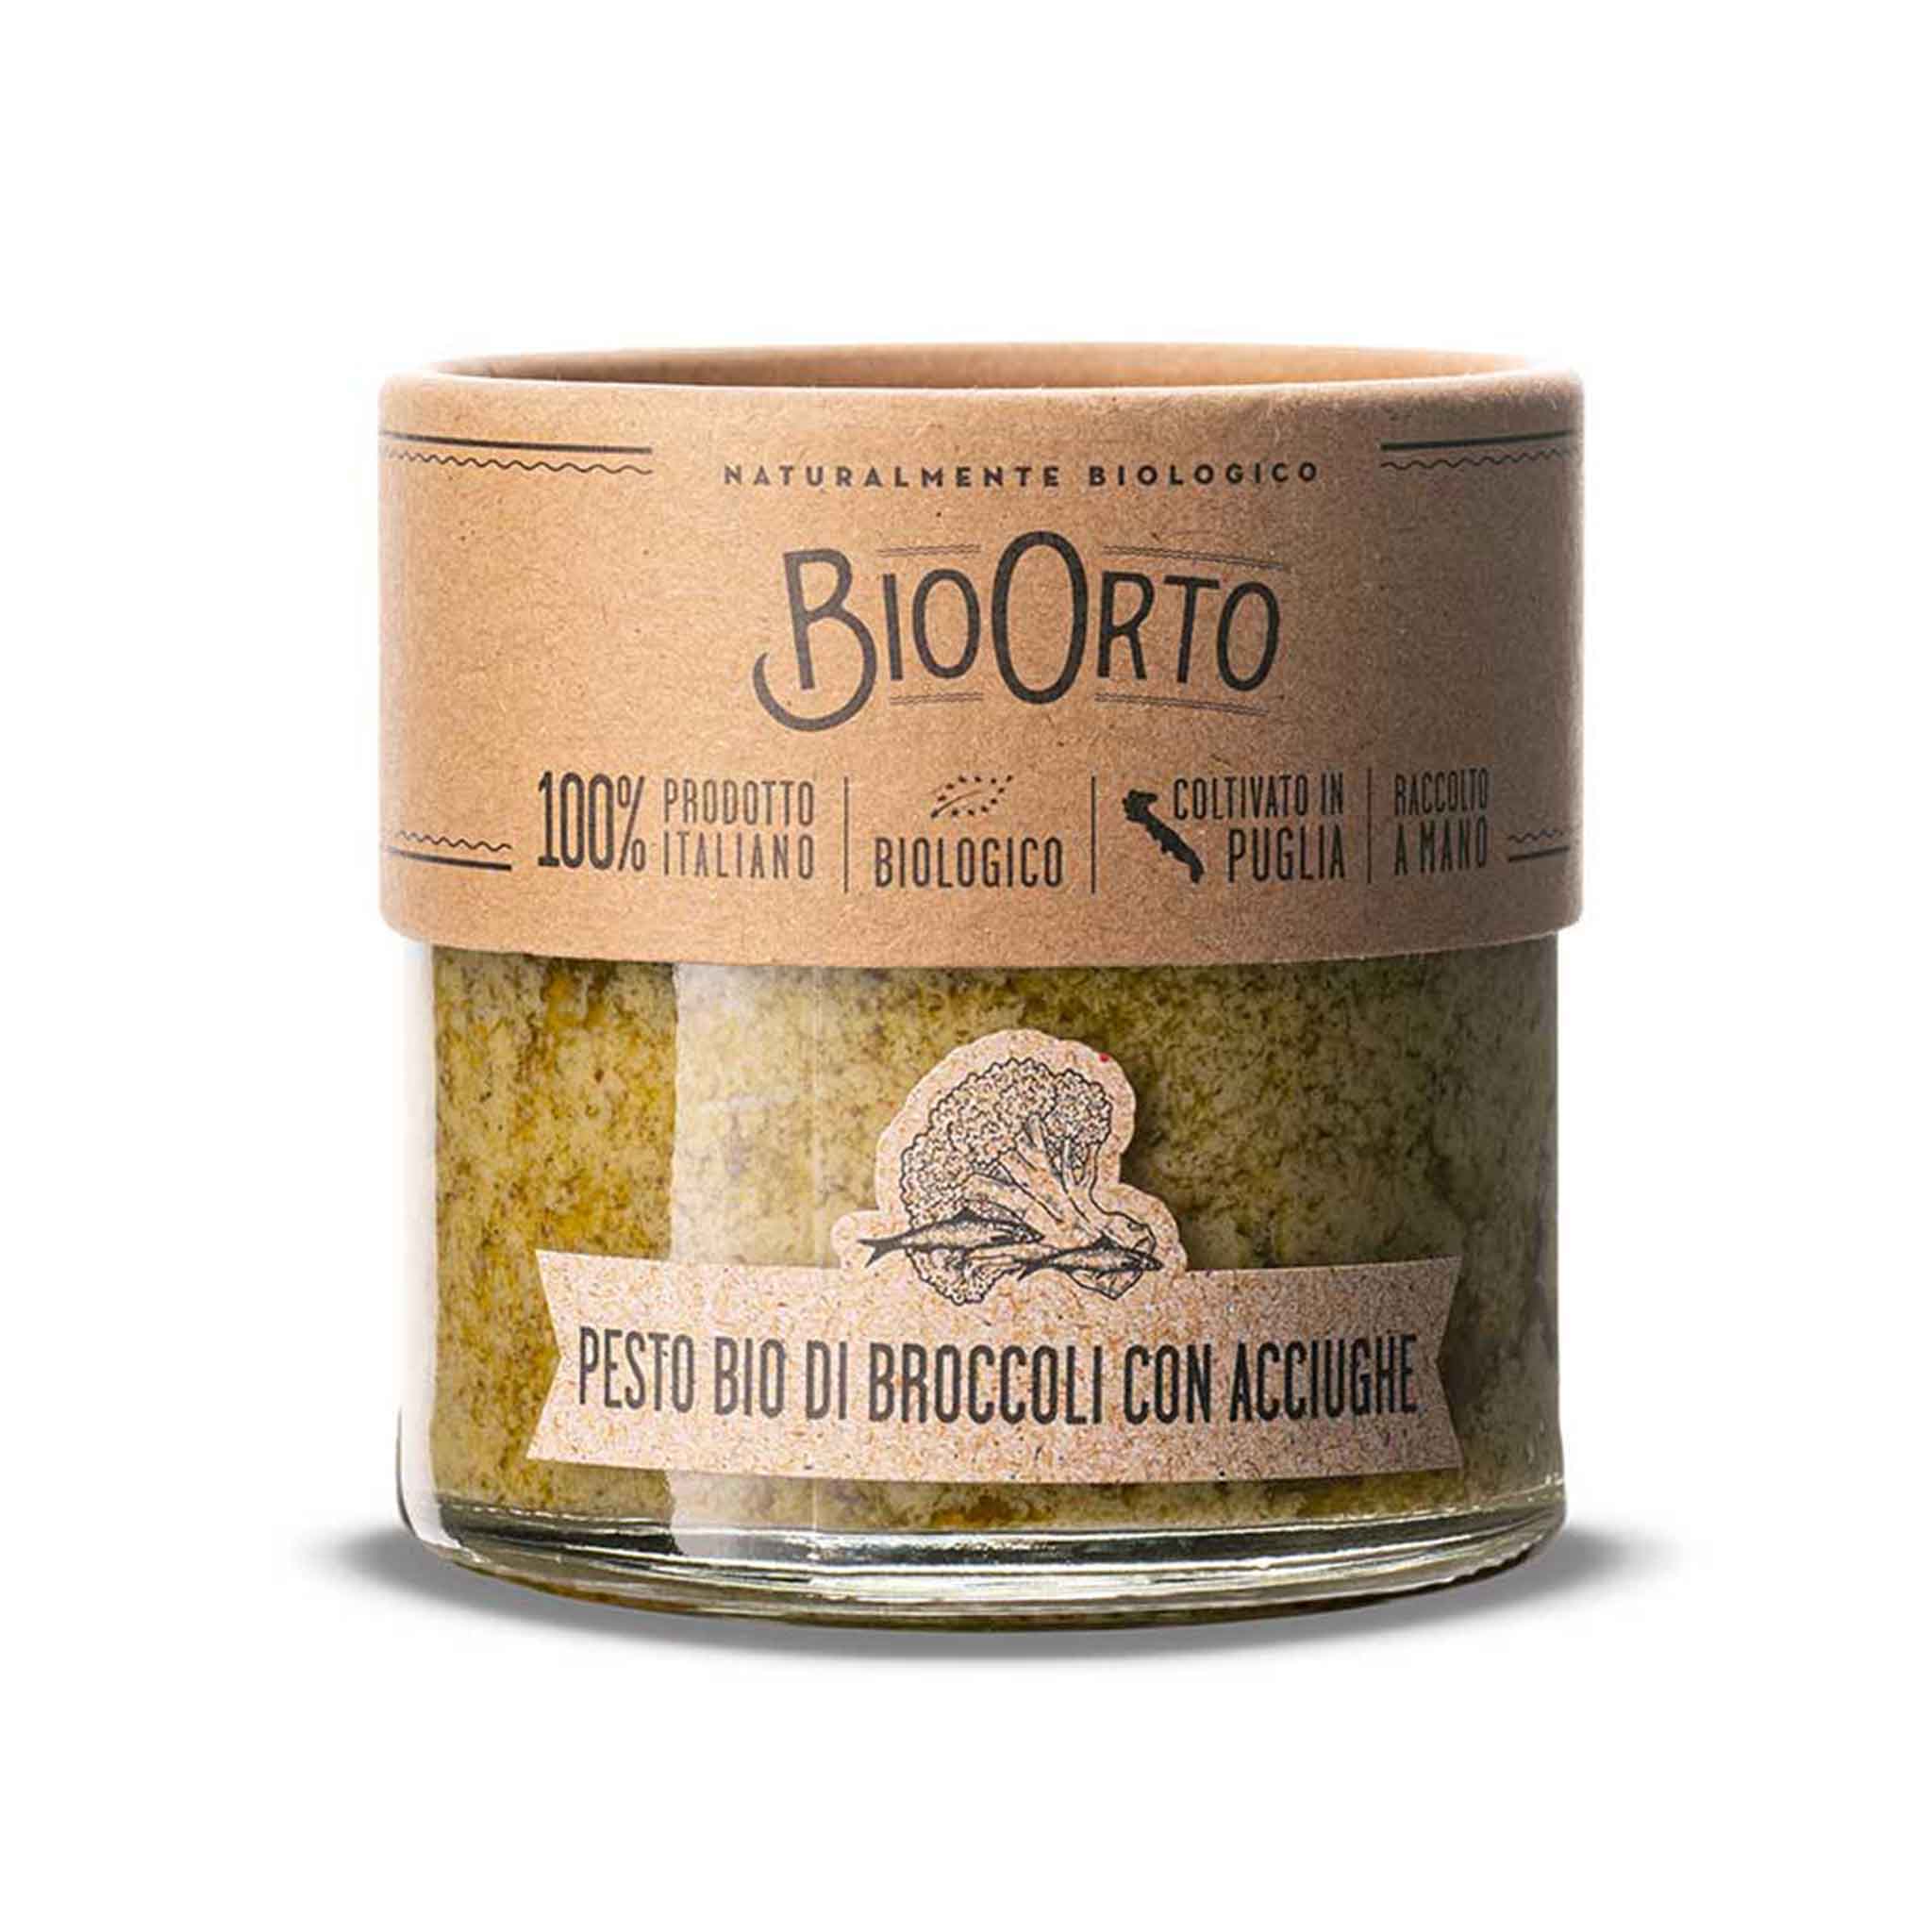 Bio Orto Broccoli Pesto with Anchovies